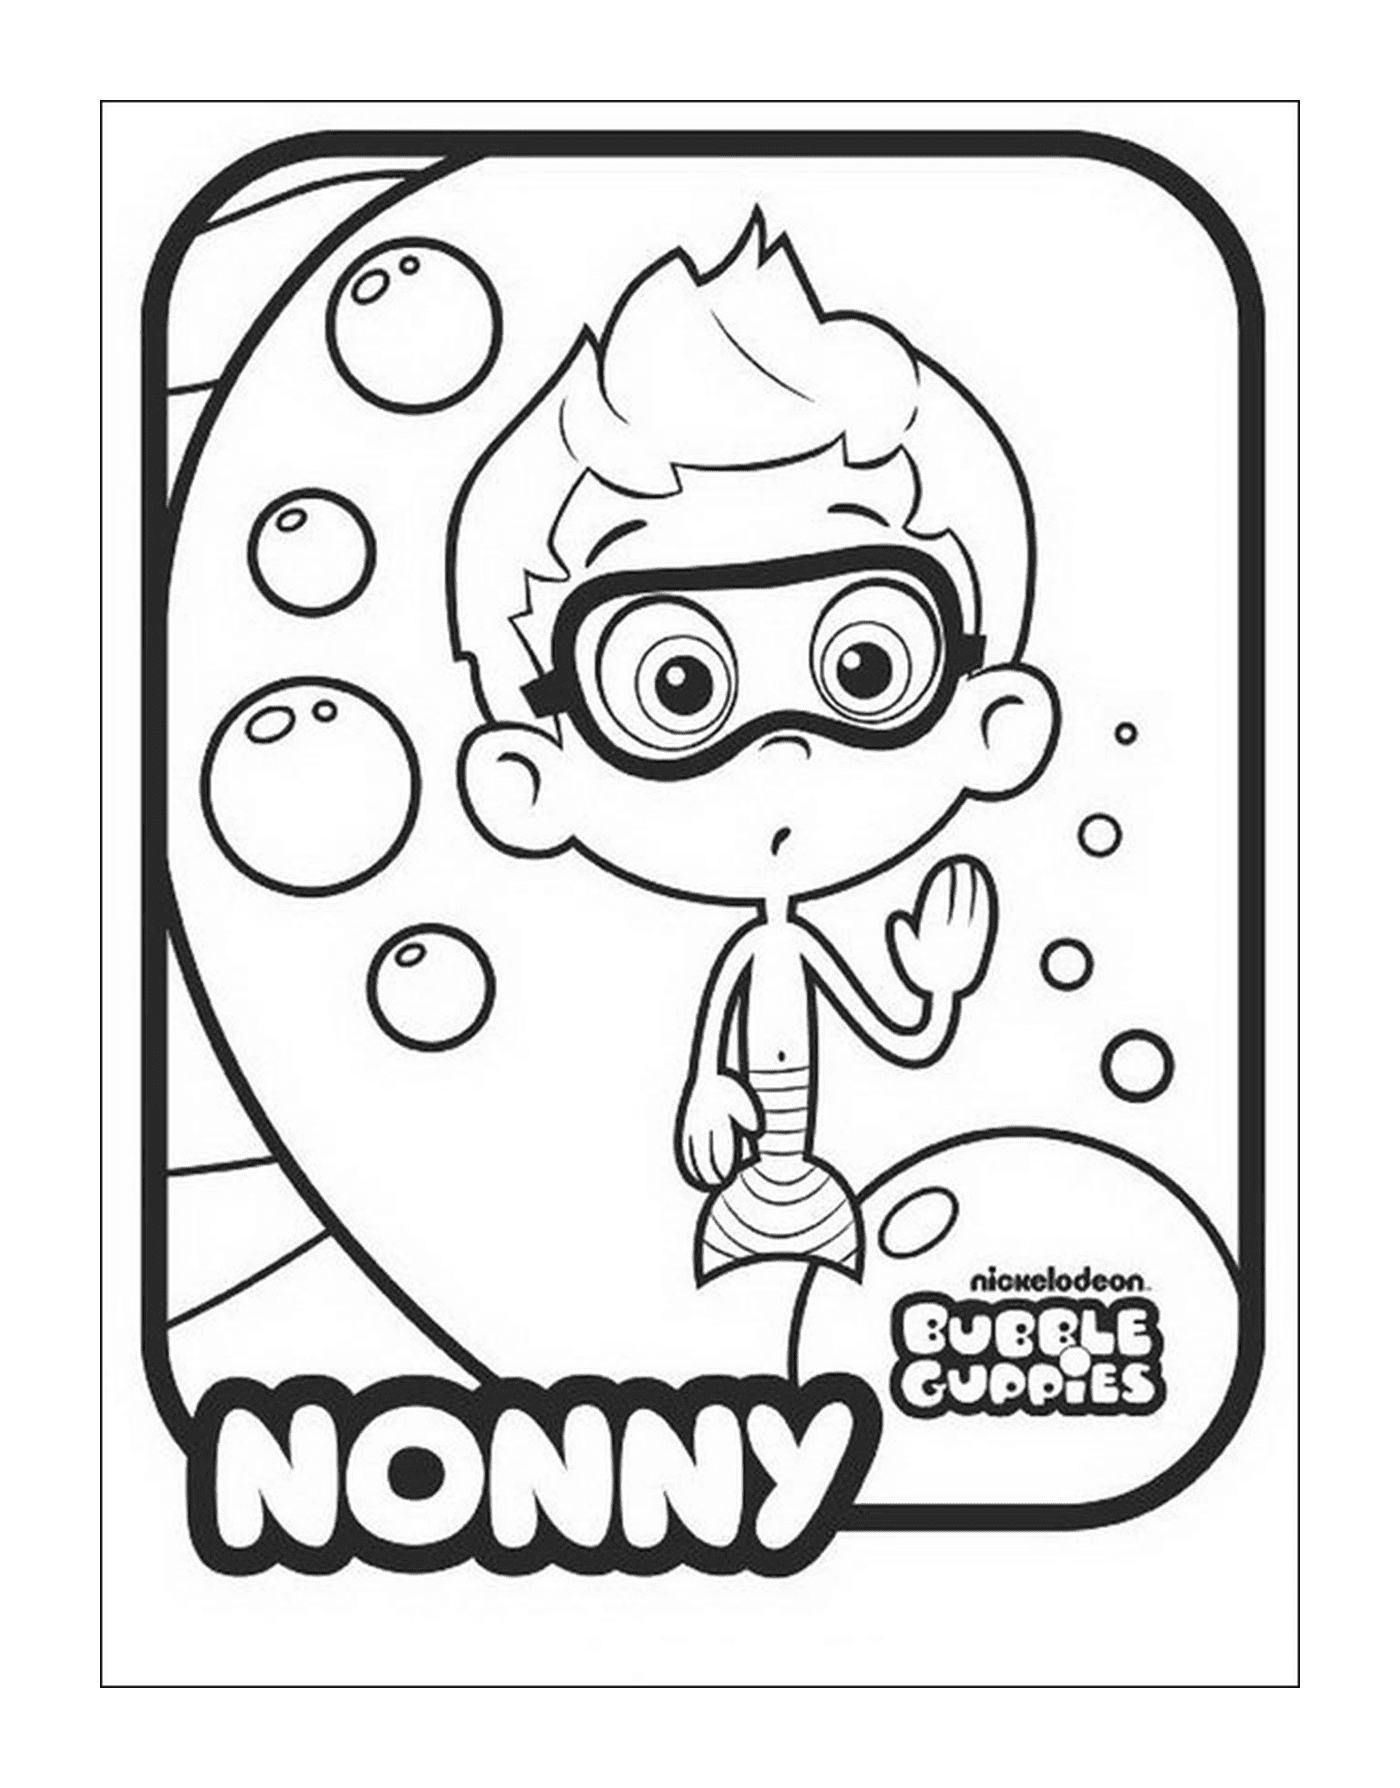  Nonny der Bubble Guppies 